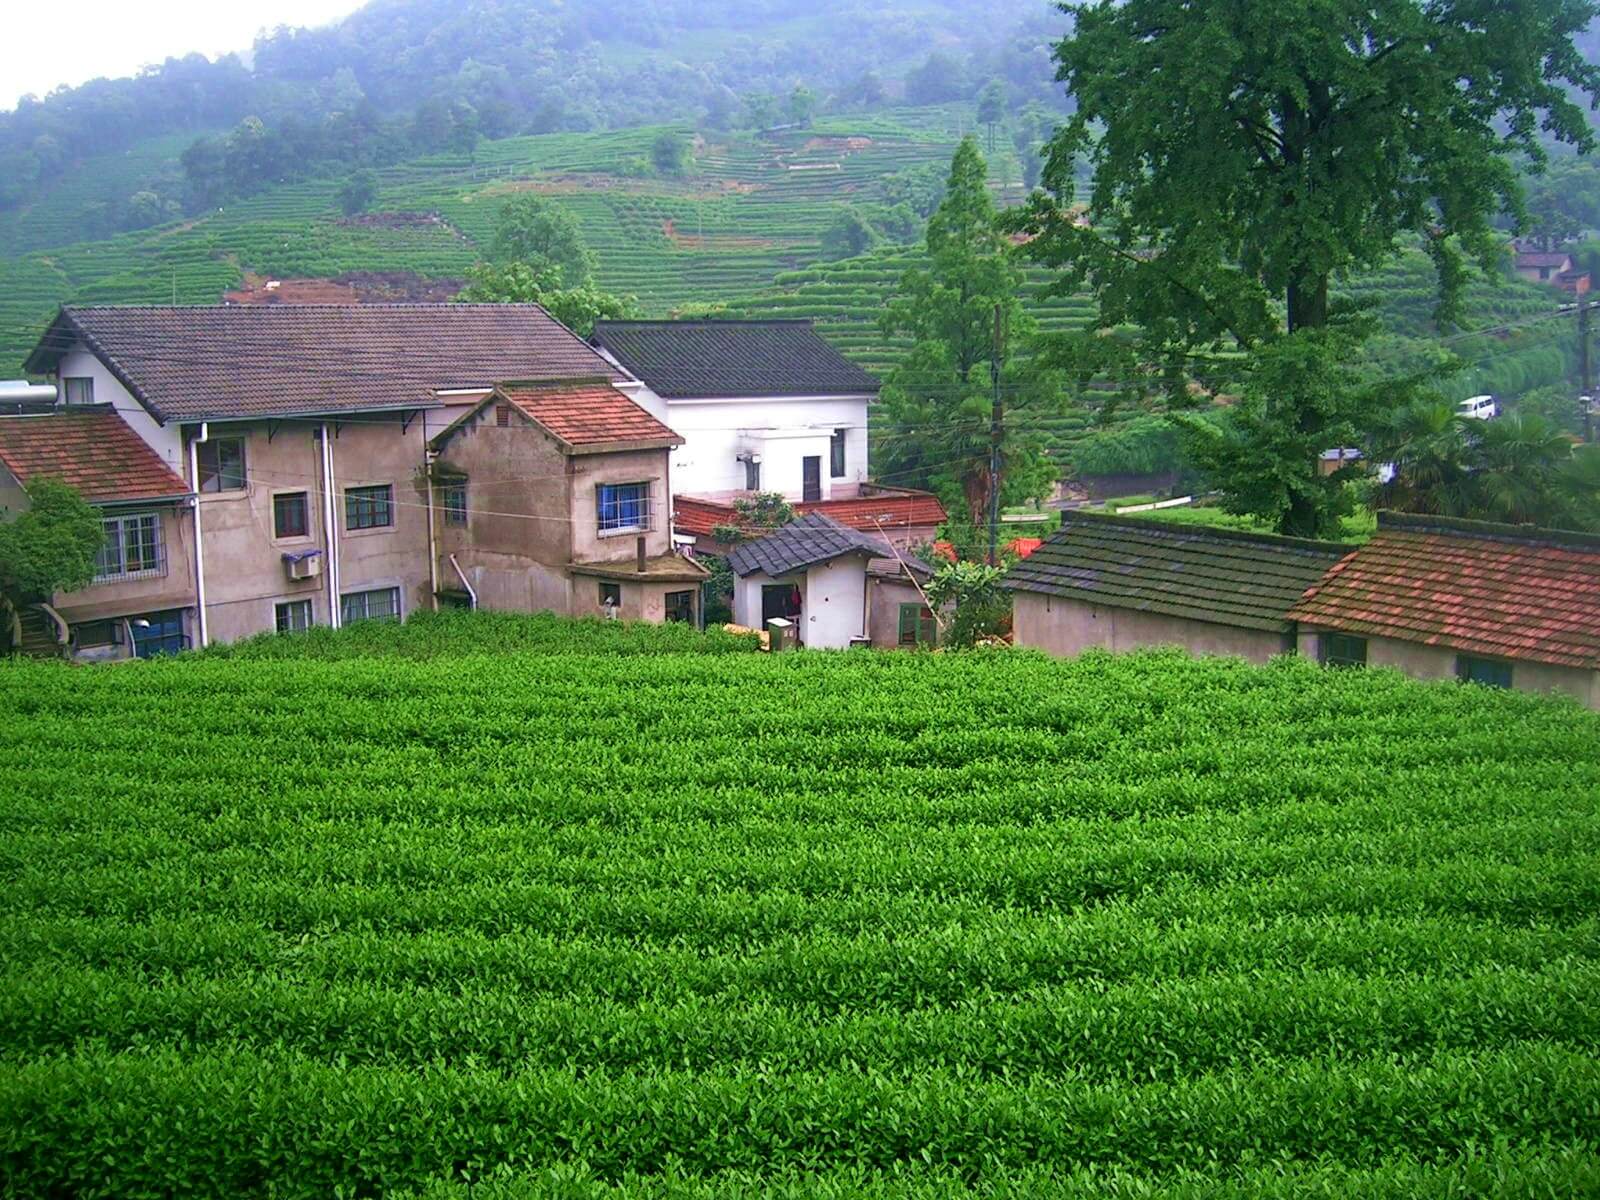 Wioska i herbaciana w Hangzhou - życie w Chinach